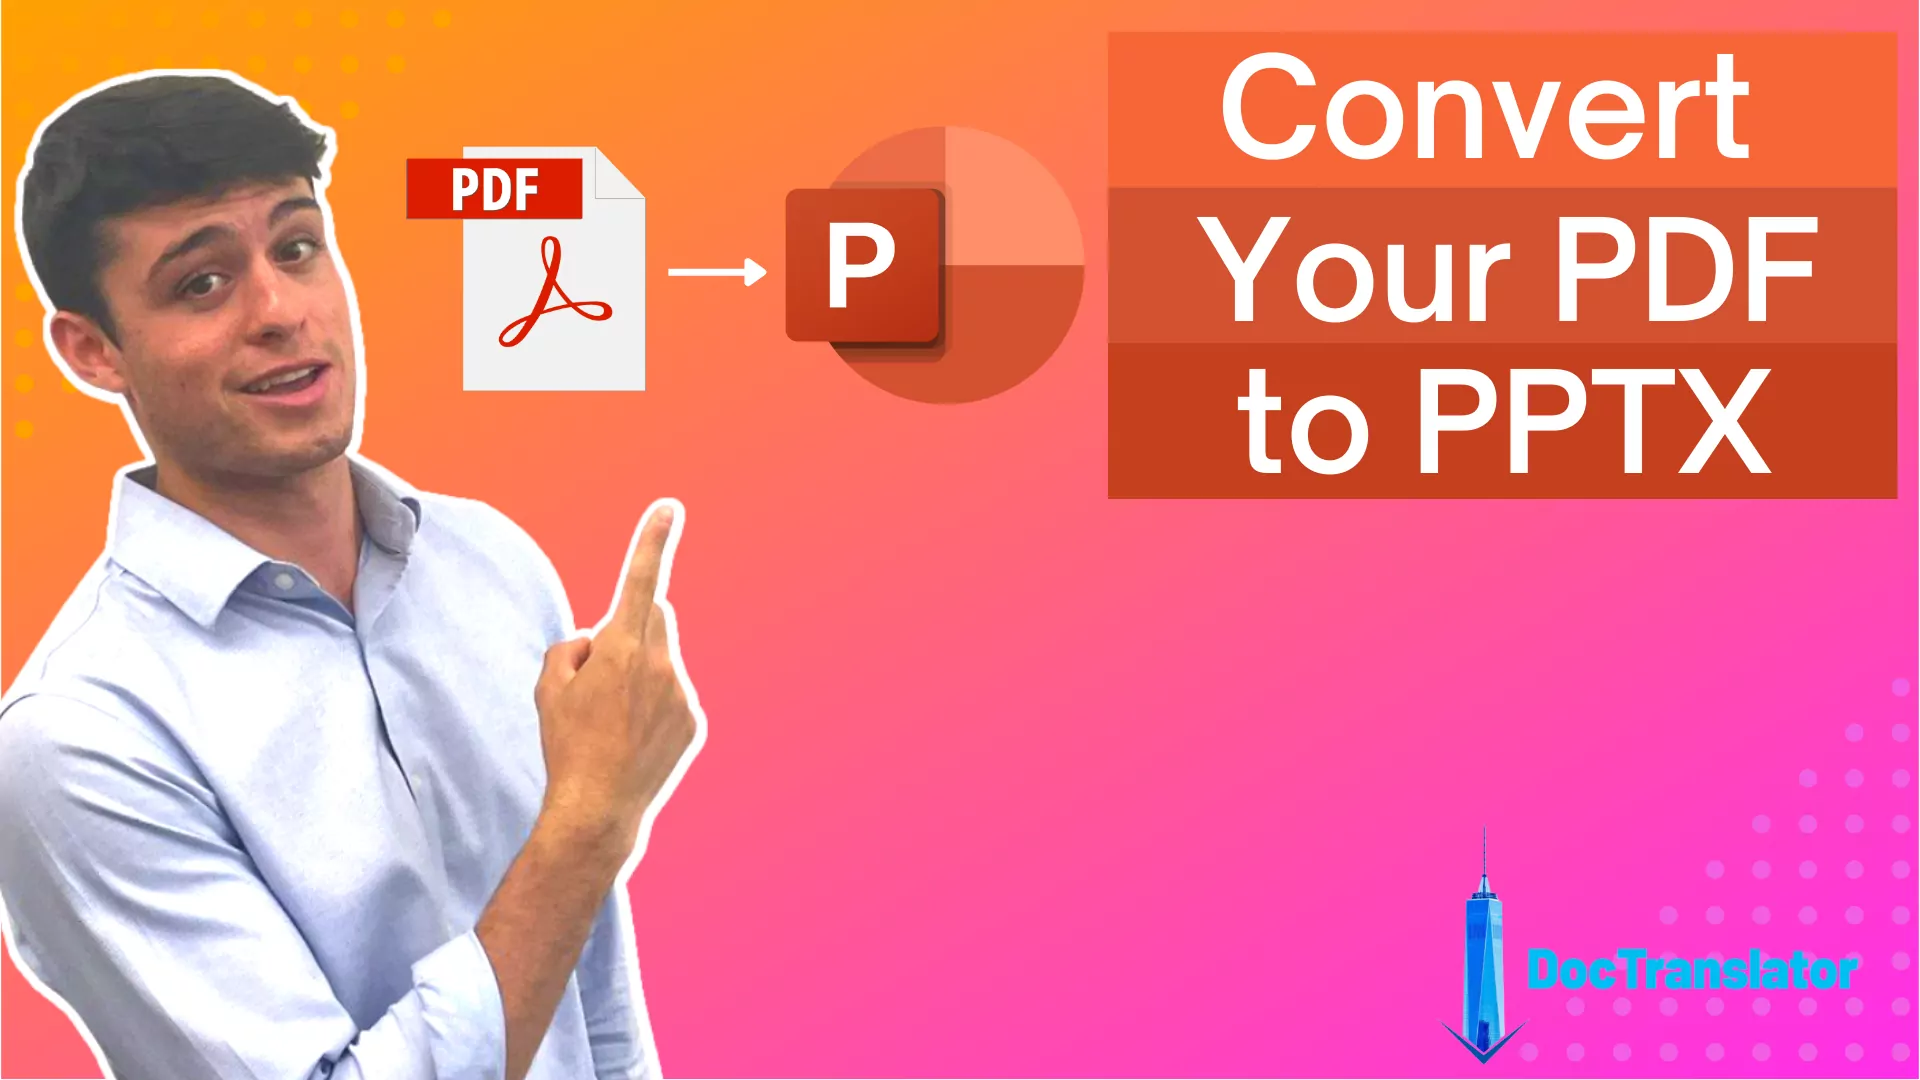 PPTX konvertálása PDF-be